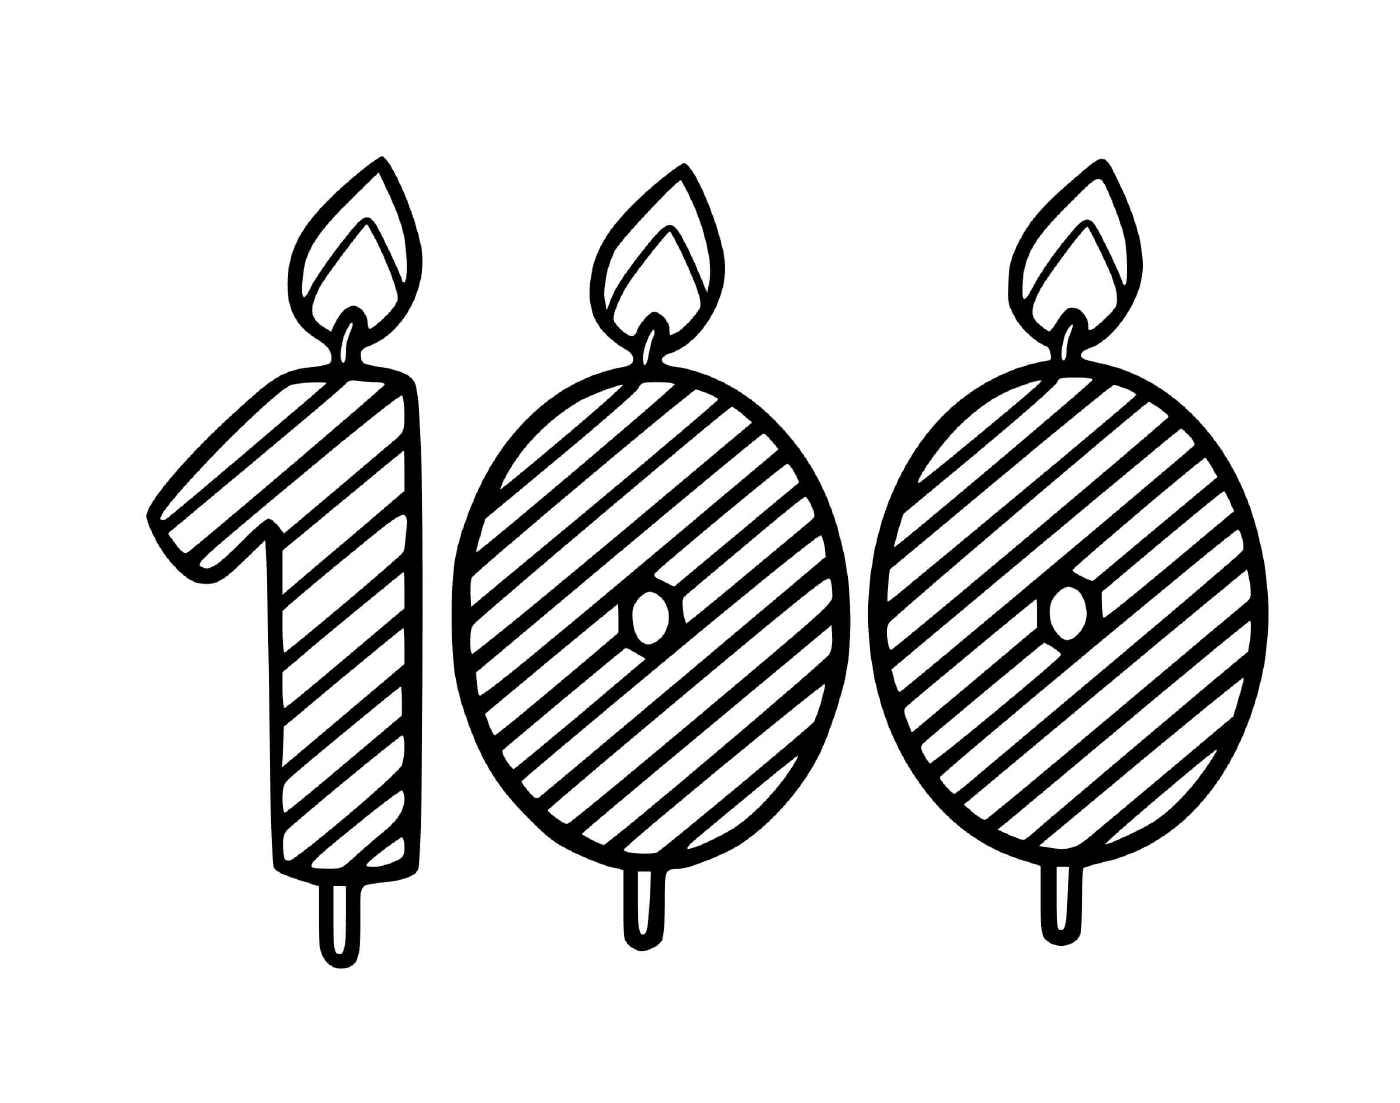  Una serie di candele che indicano 1 0 0 